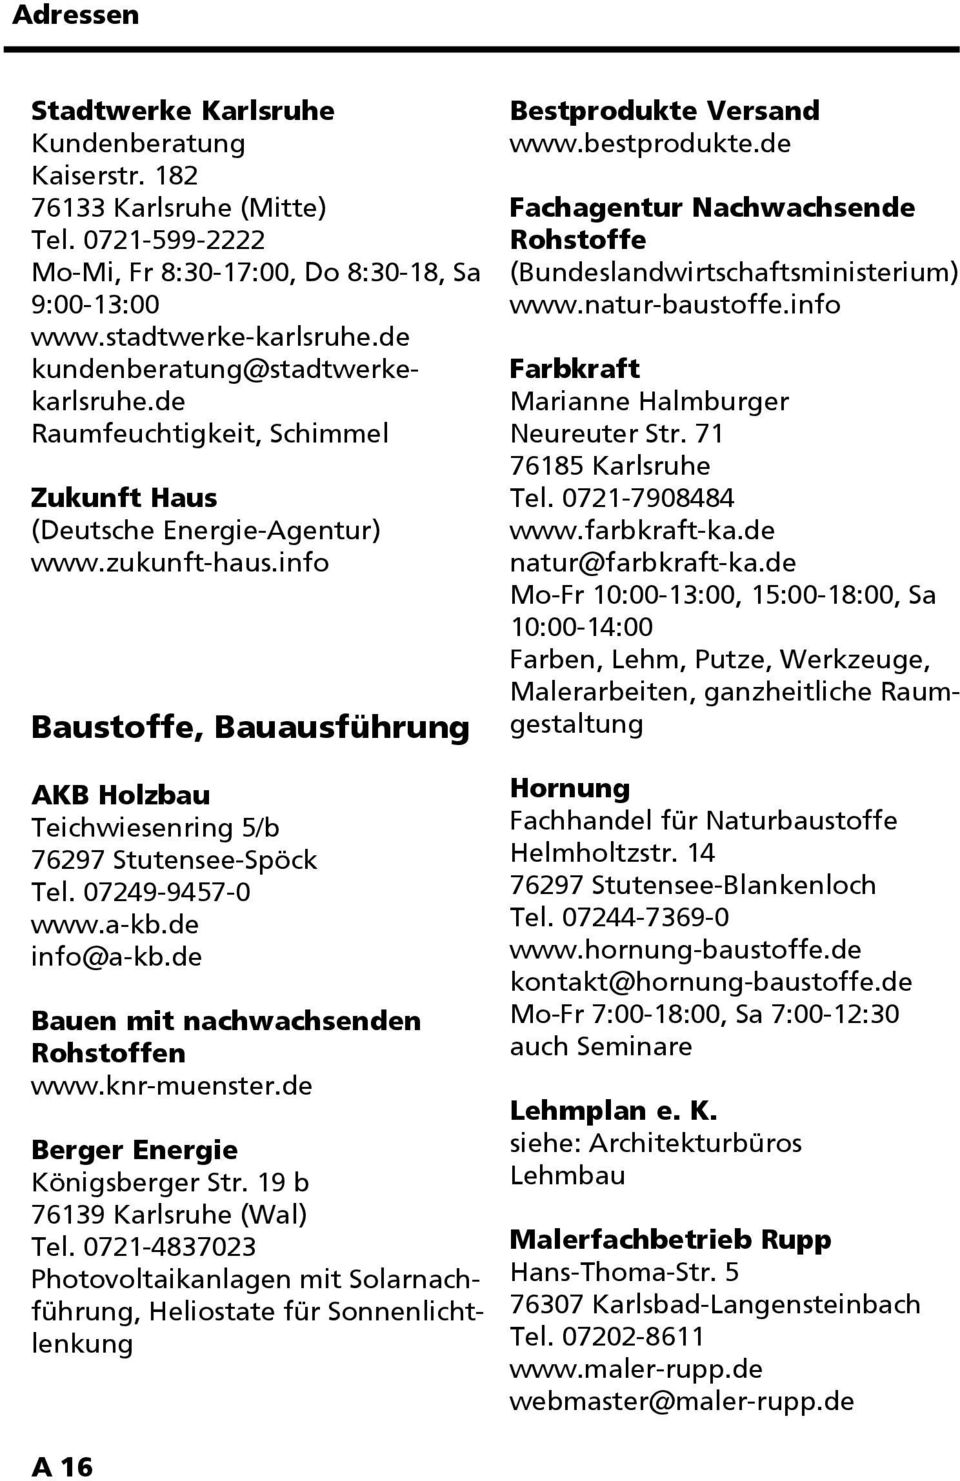 de info@a-kb.de Bauen mit nachwachsenden Rohstoffen www.knr-muenster.de Berger Energie Königsberger Str. 19 b 76139 Karlsruhe (Wal) Tel.